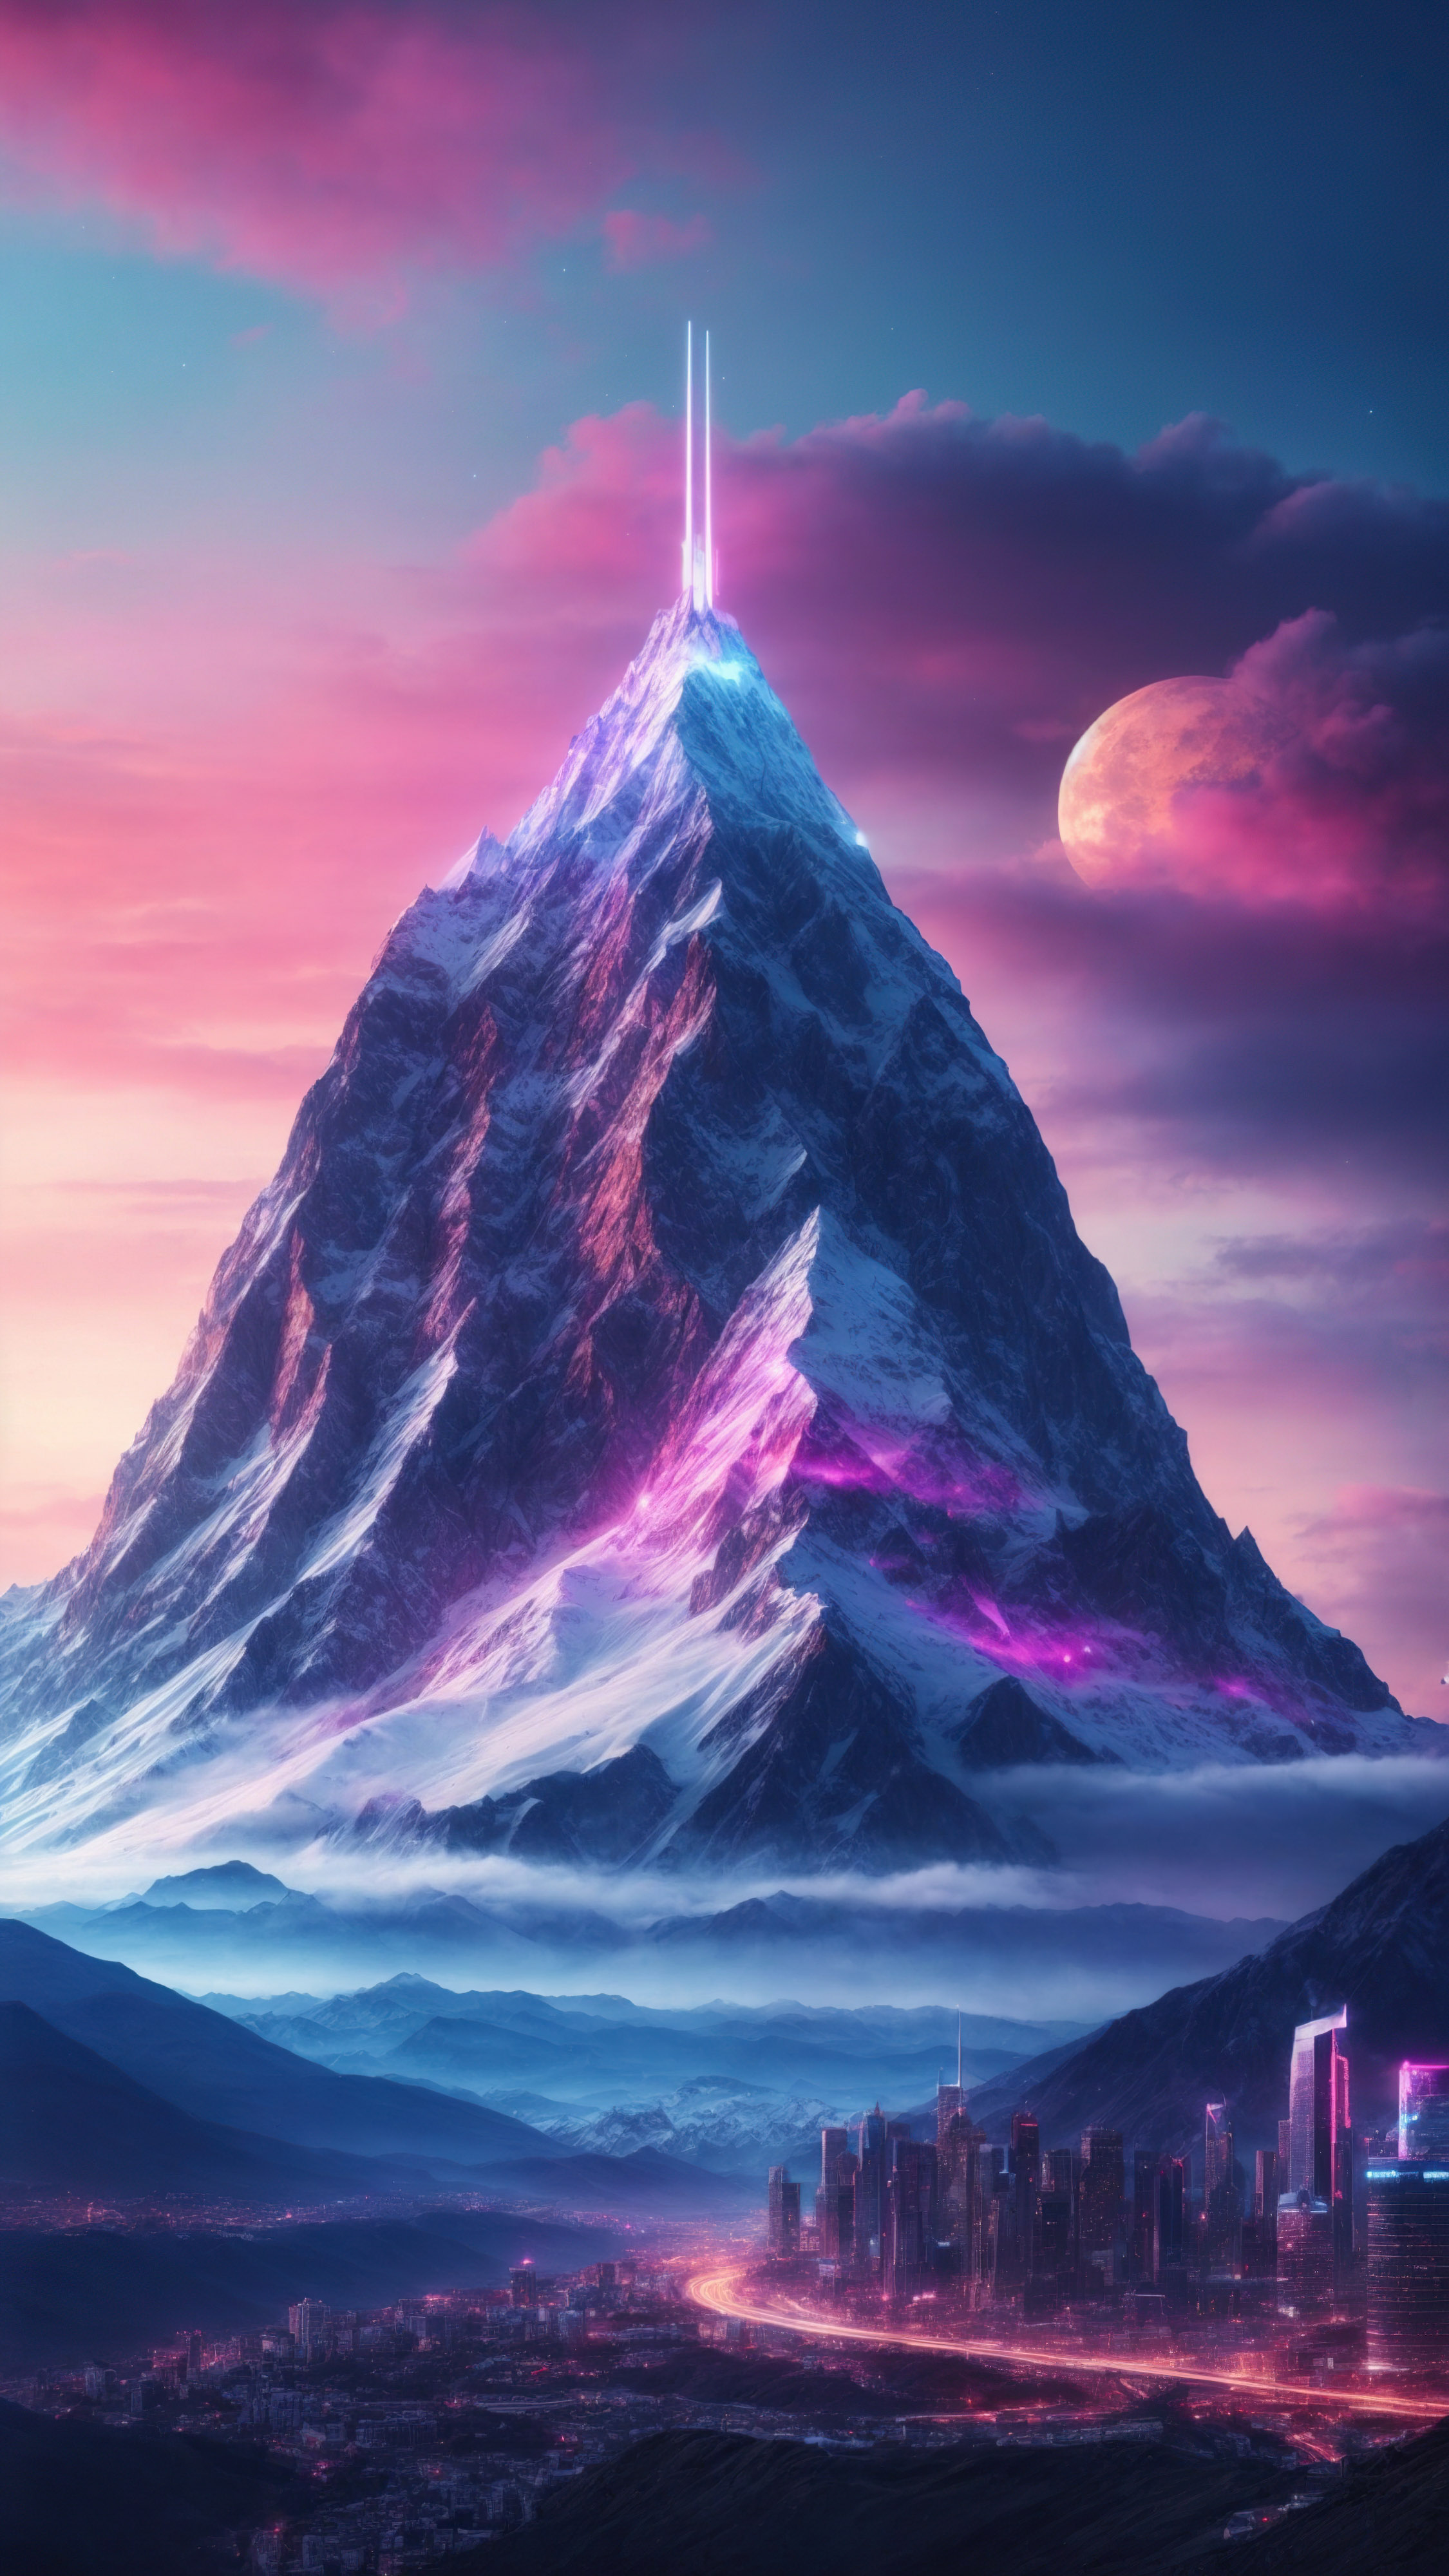 Entrez dans le futur avec notre fond d'écran de montagne violet pour iPhone, présentant une montagne futuriste avec une ville et un vaisseau spatial, sous un ciel néon et une étoile.